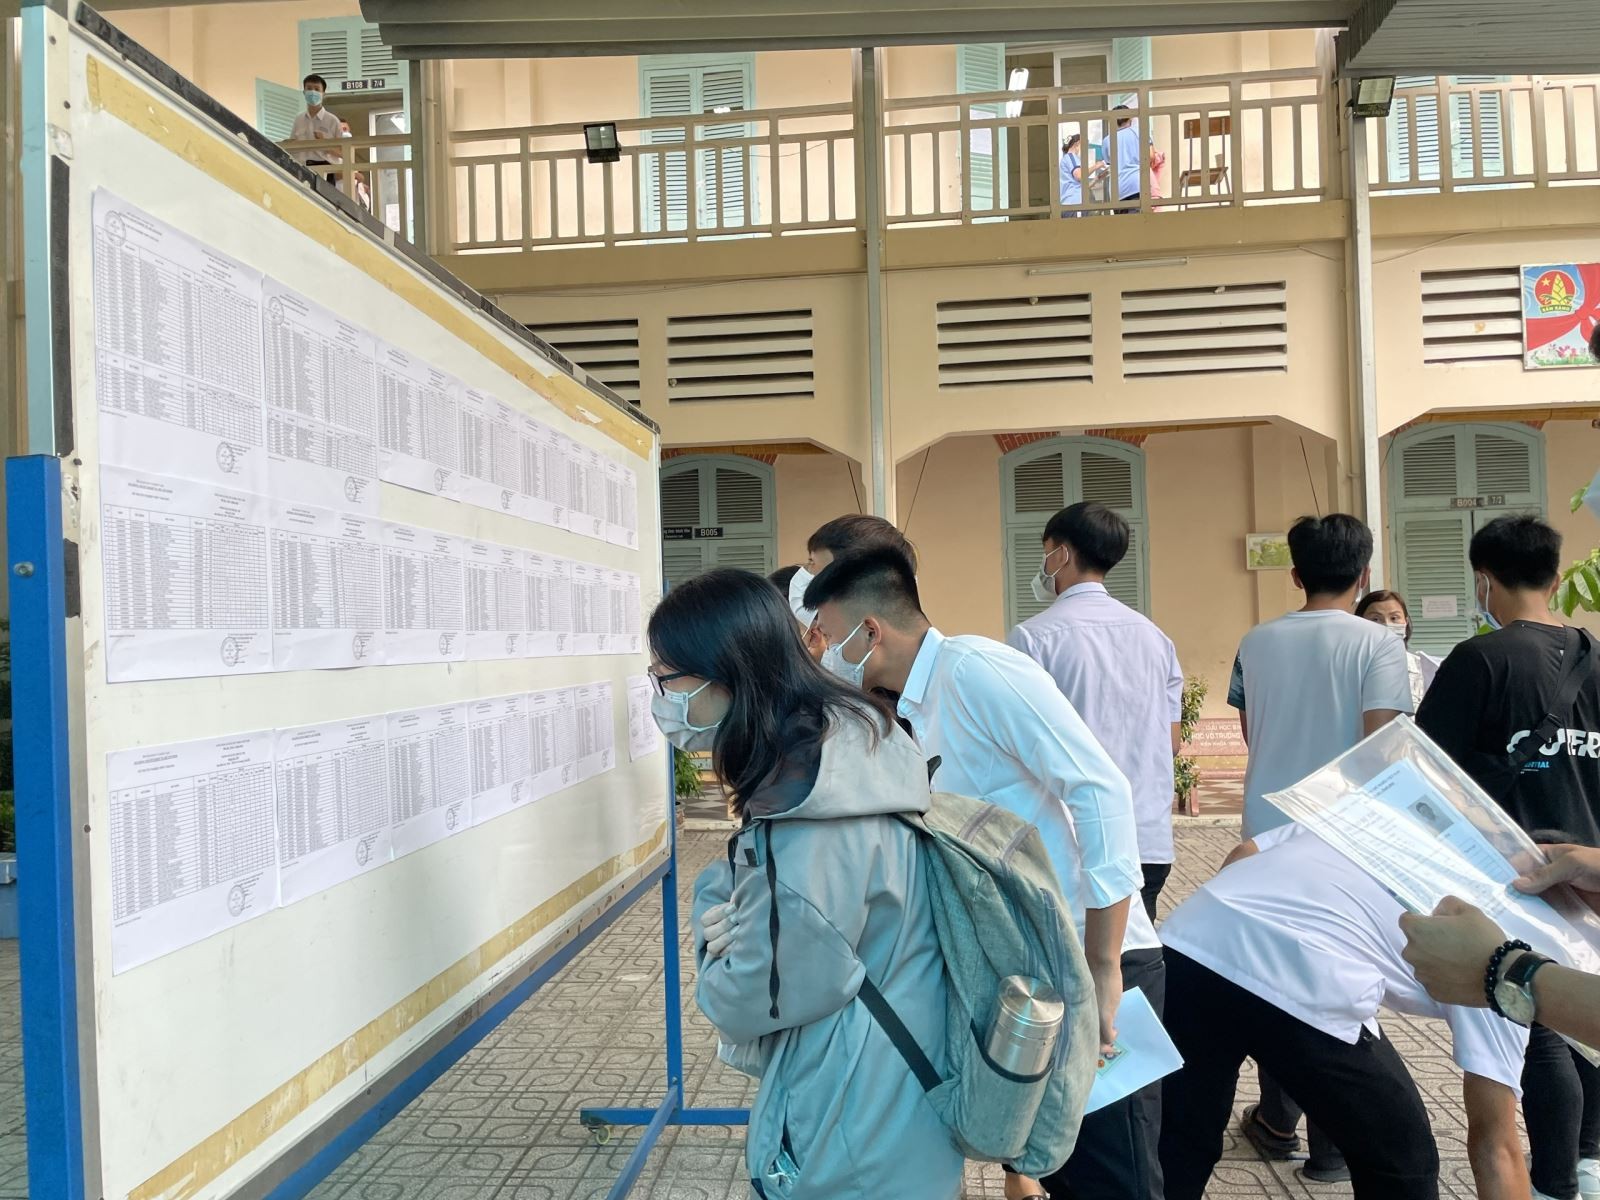 TP. Hồ Chí Minh: Hồ sơ xét tuyển điểm thi đánh giá năng lực giảm mạnh, điểm chuẩn không giảm